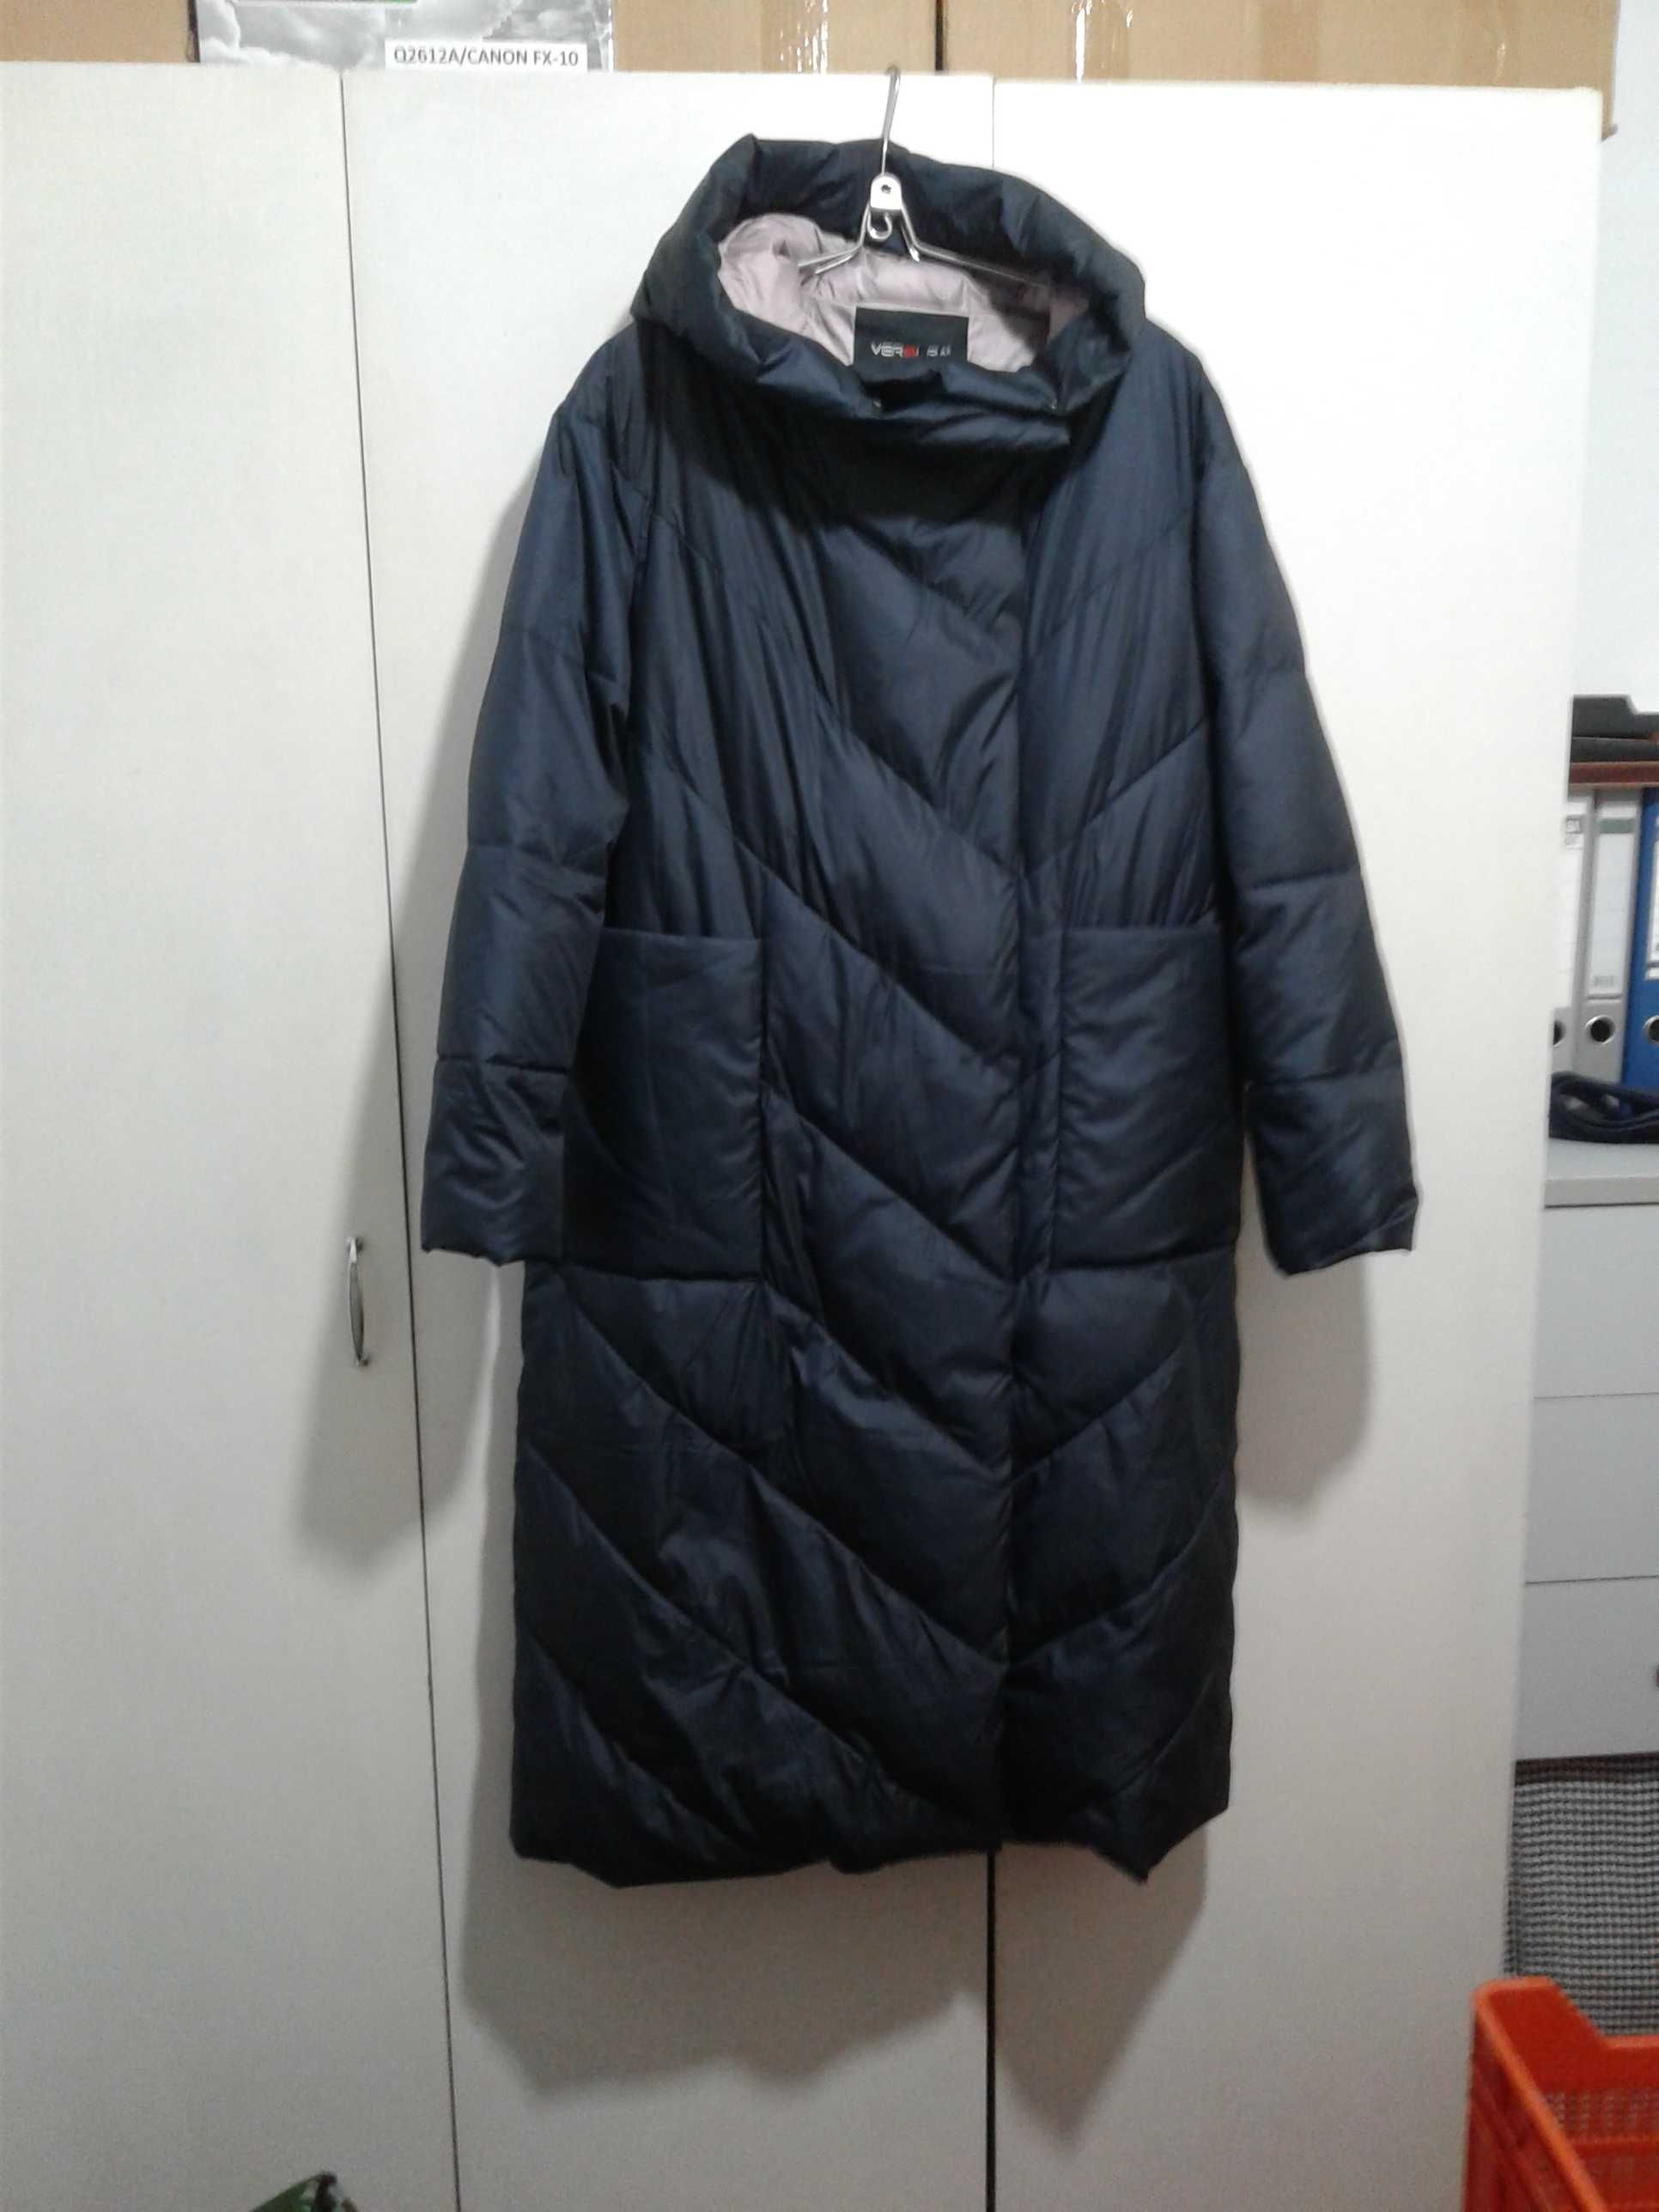 Зимнее пальто "Veralba" 50 размер